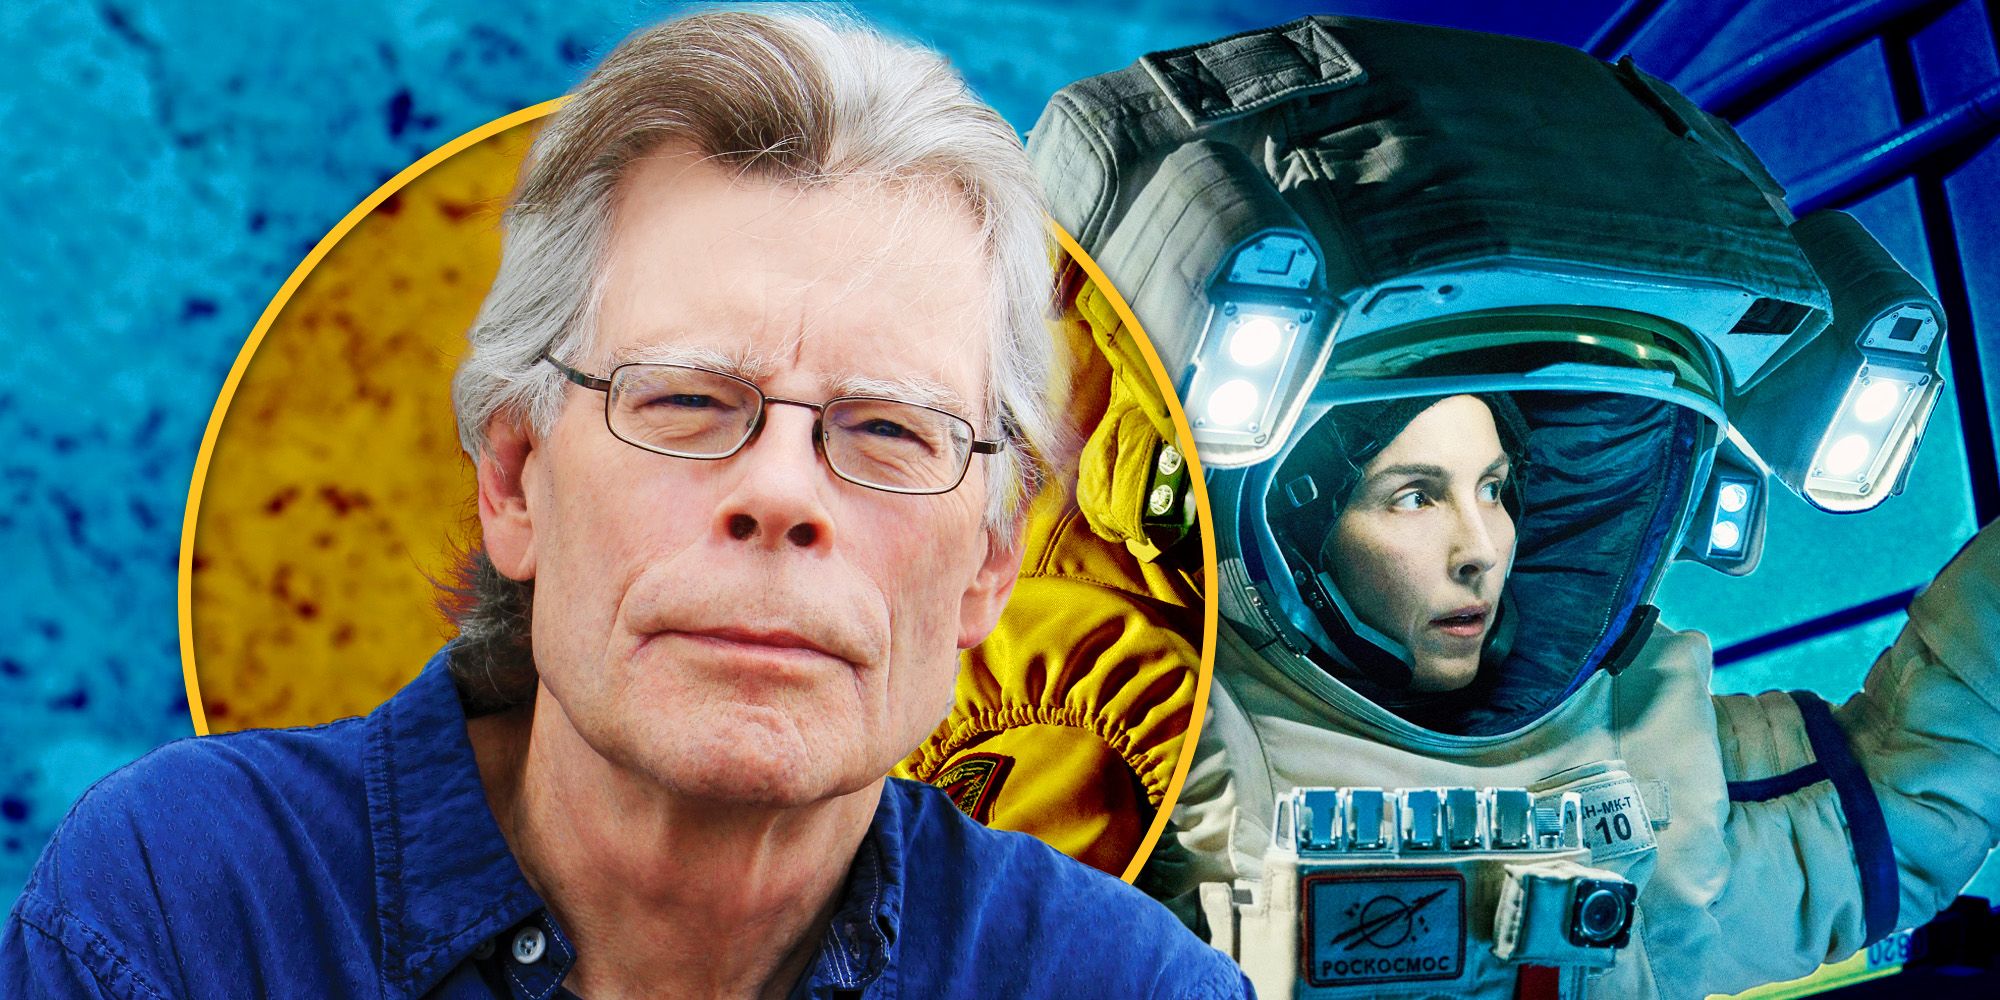 "Reseña de cinco estrellas de parte de Dios": el creador del programa de ciencia ficción Apple TV+ reacciona a la reseña "Just About Perfect" de Stephen King